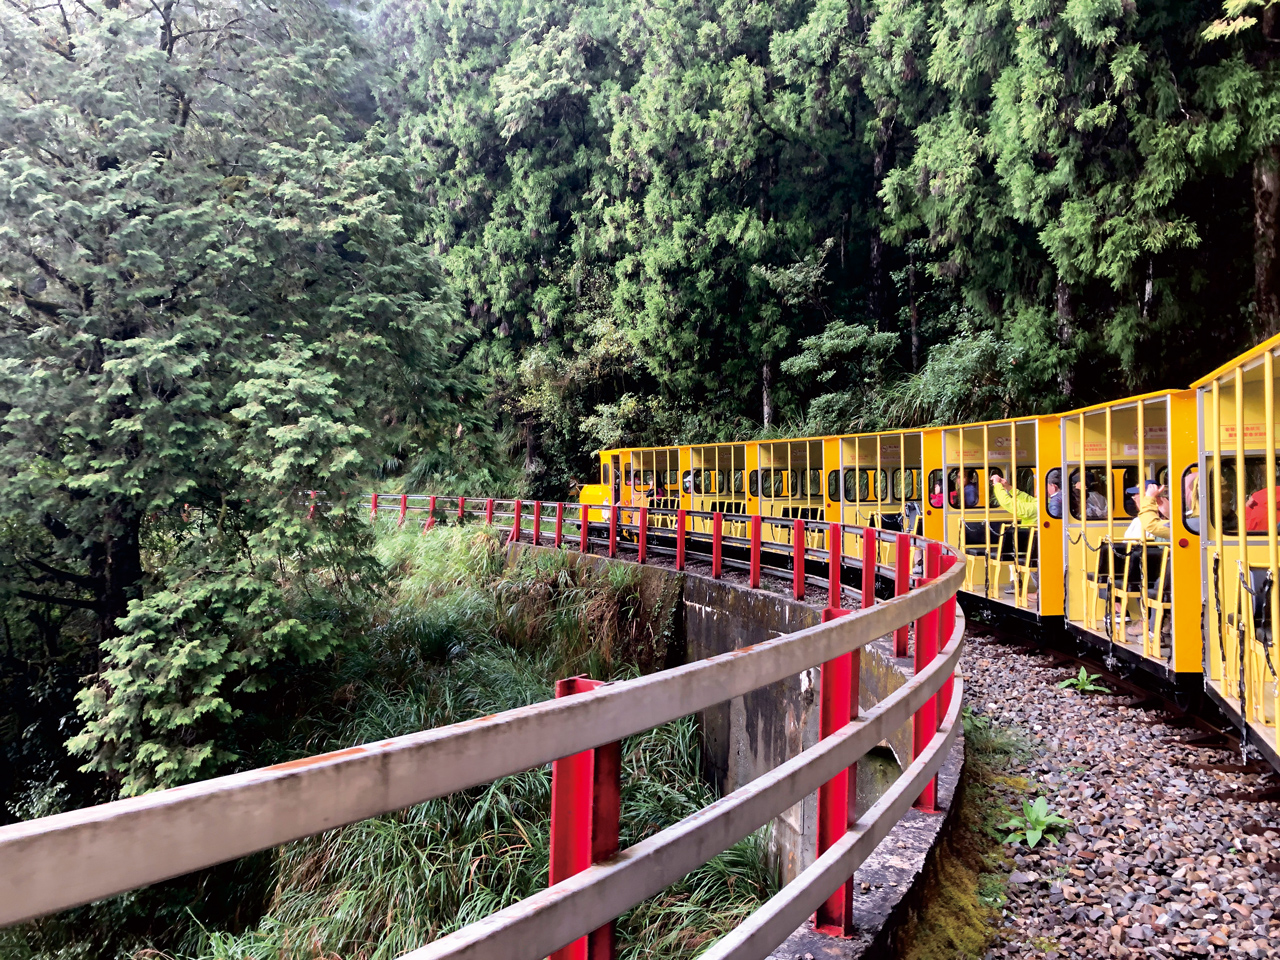 蹦蹦車從太平山車站鳴笛出發，穿梭於峭壁、巨木、懸崖、鐵橋間。